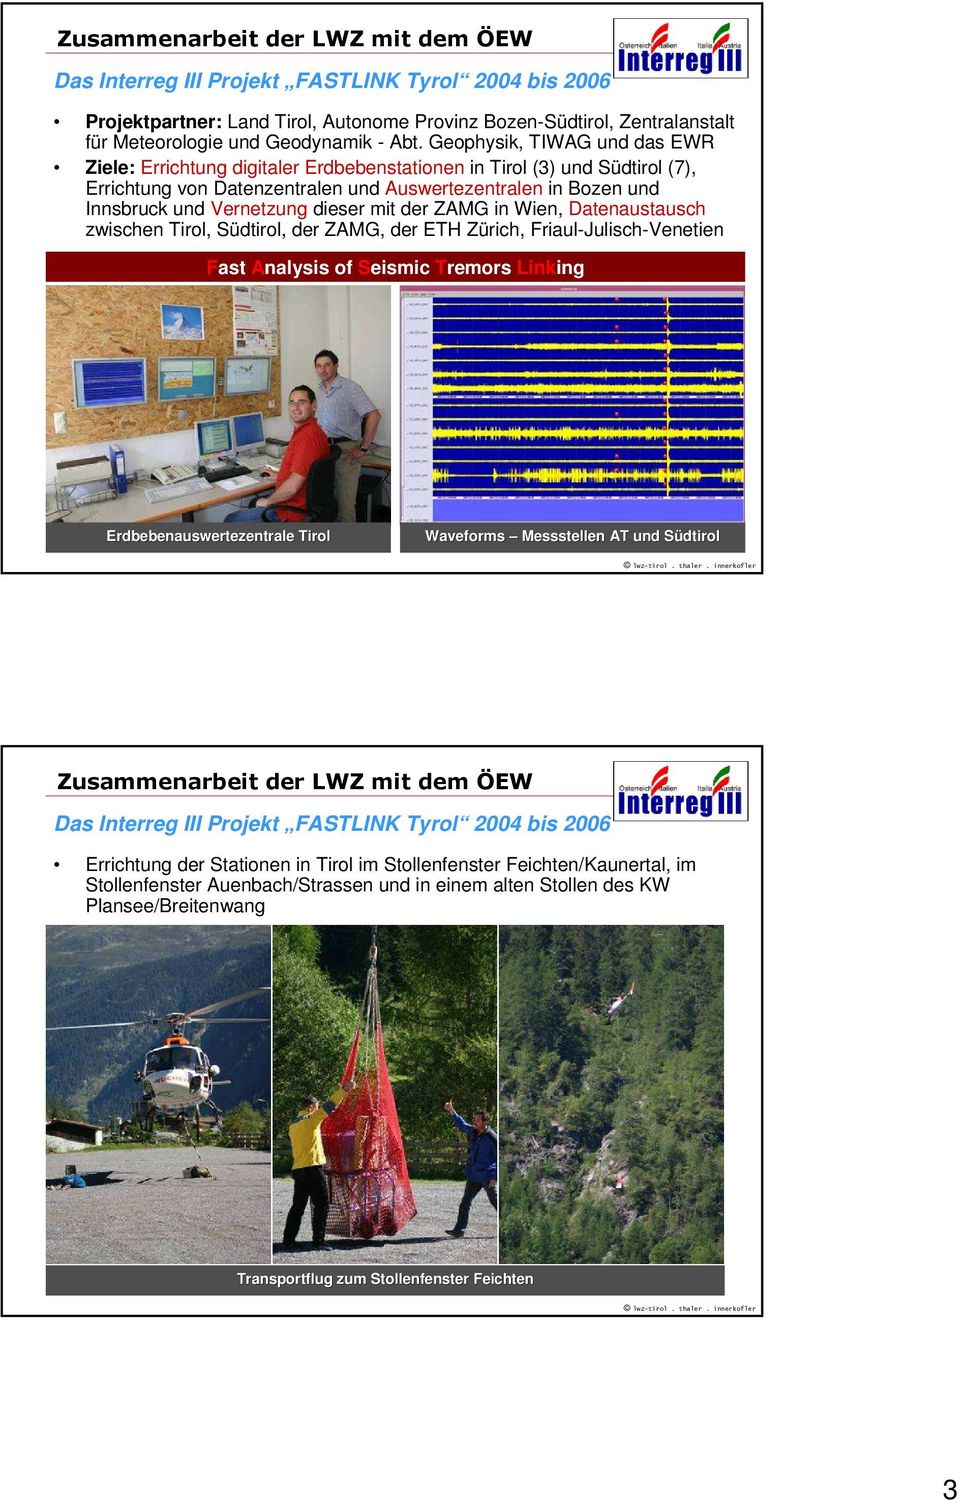 Vernetzung dieser mit der ZAMG in Wien, Datenaustausch zwischen Tirol, Südtirol, der ZAMG, der ETH Zürich, Friaul-Julisch-Venetien Fast Analysis of Seismic Tremors Linking Erdbebenauswertezentrale